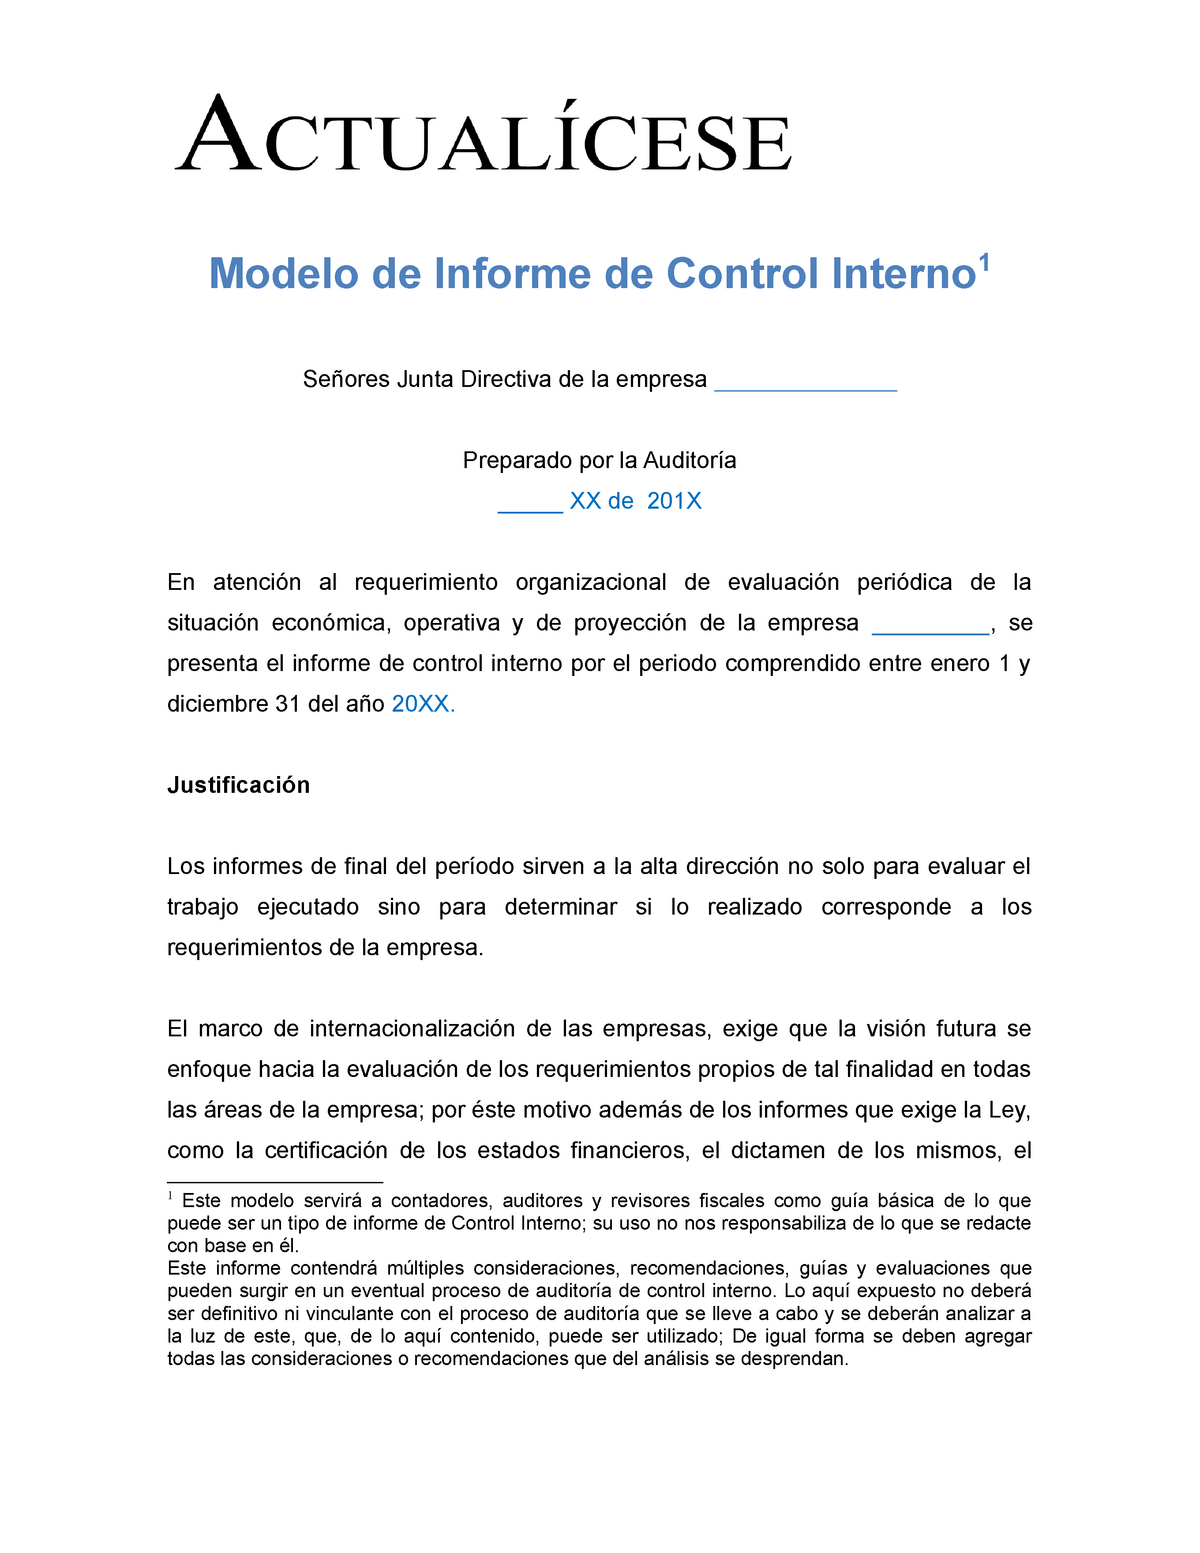 Modelo de informe de control interno - Justificación Los informes de final  del período sirven a la - Studocu